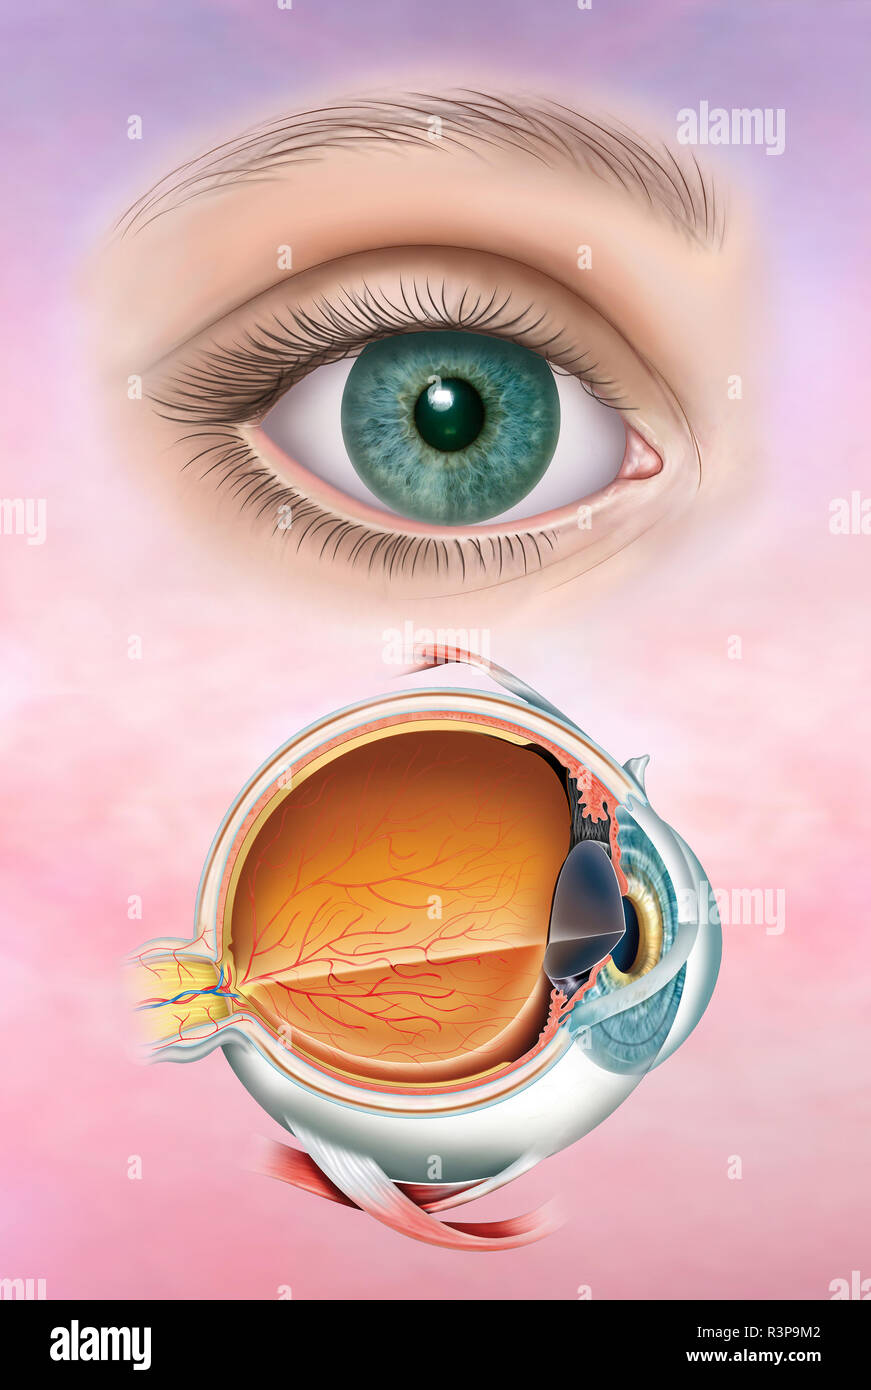 Illustrazione composta dell'occhio umano in una versione realistica e poi l'anatomia dell'occhio con la sua struttura e gli strati che lo compongono. Foto Stock